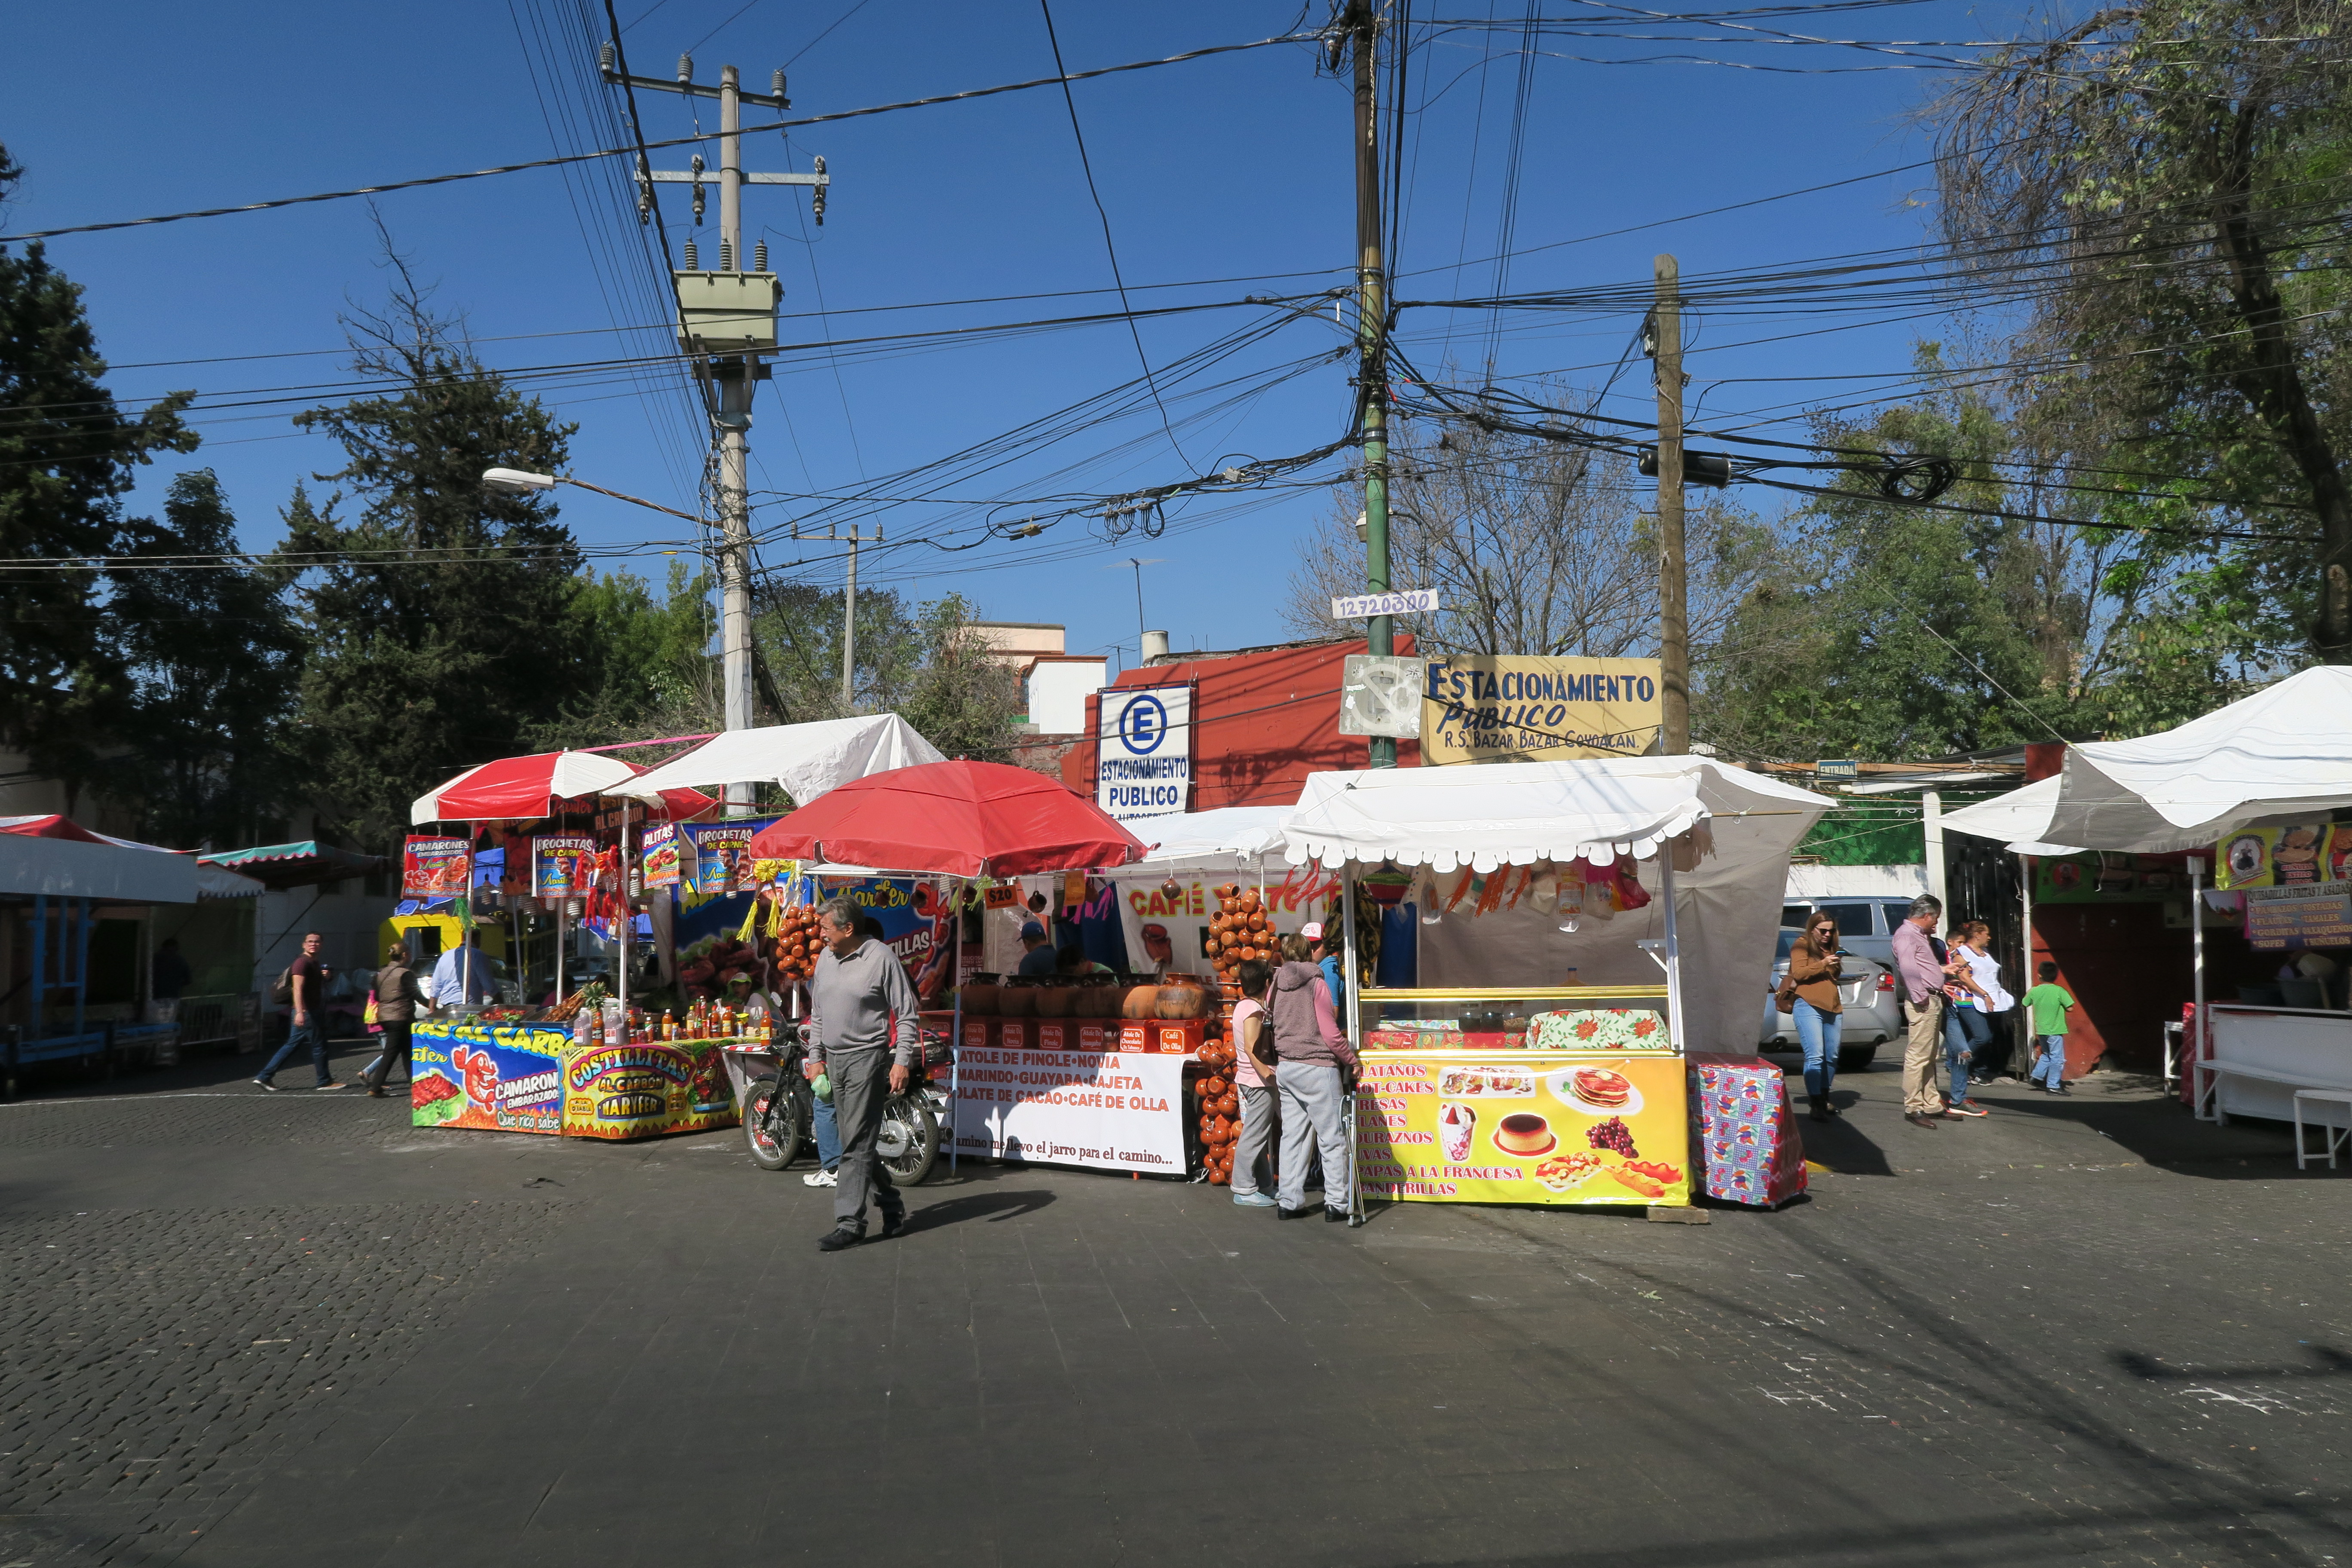 Balades entre les stands marchands de la ville, qui vendent de la streetfood, Mexico